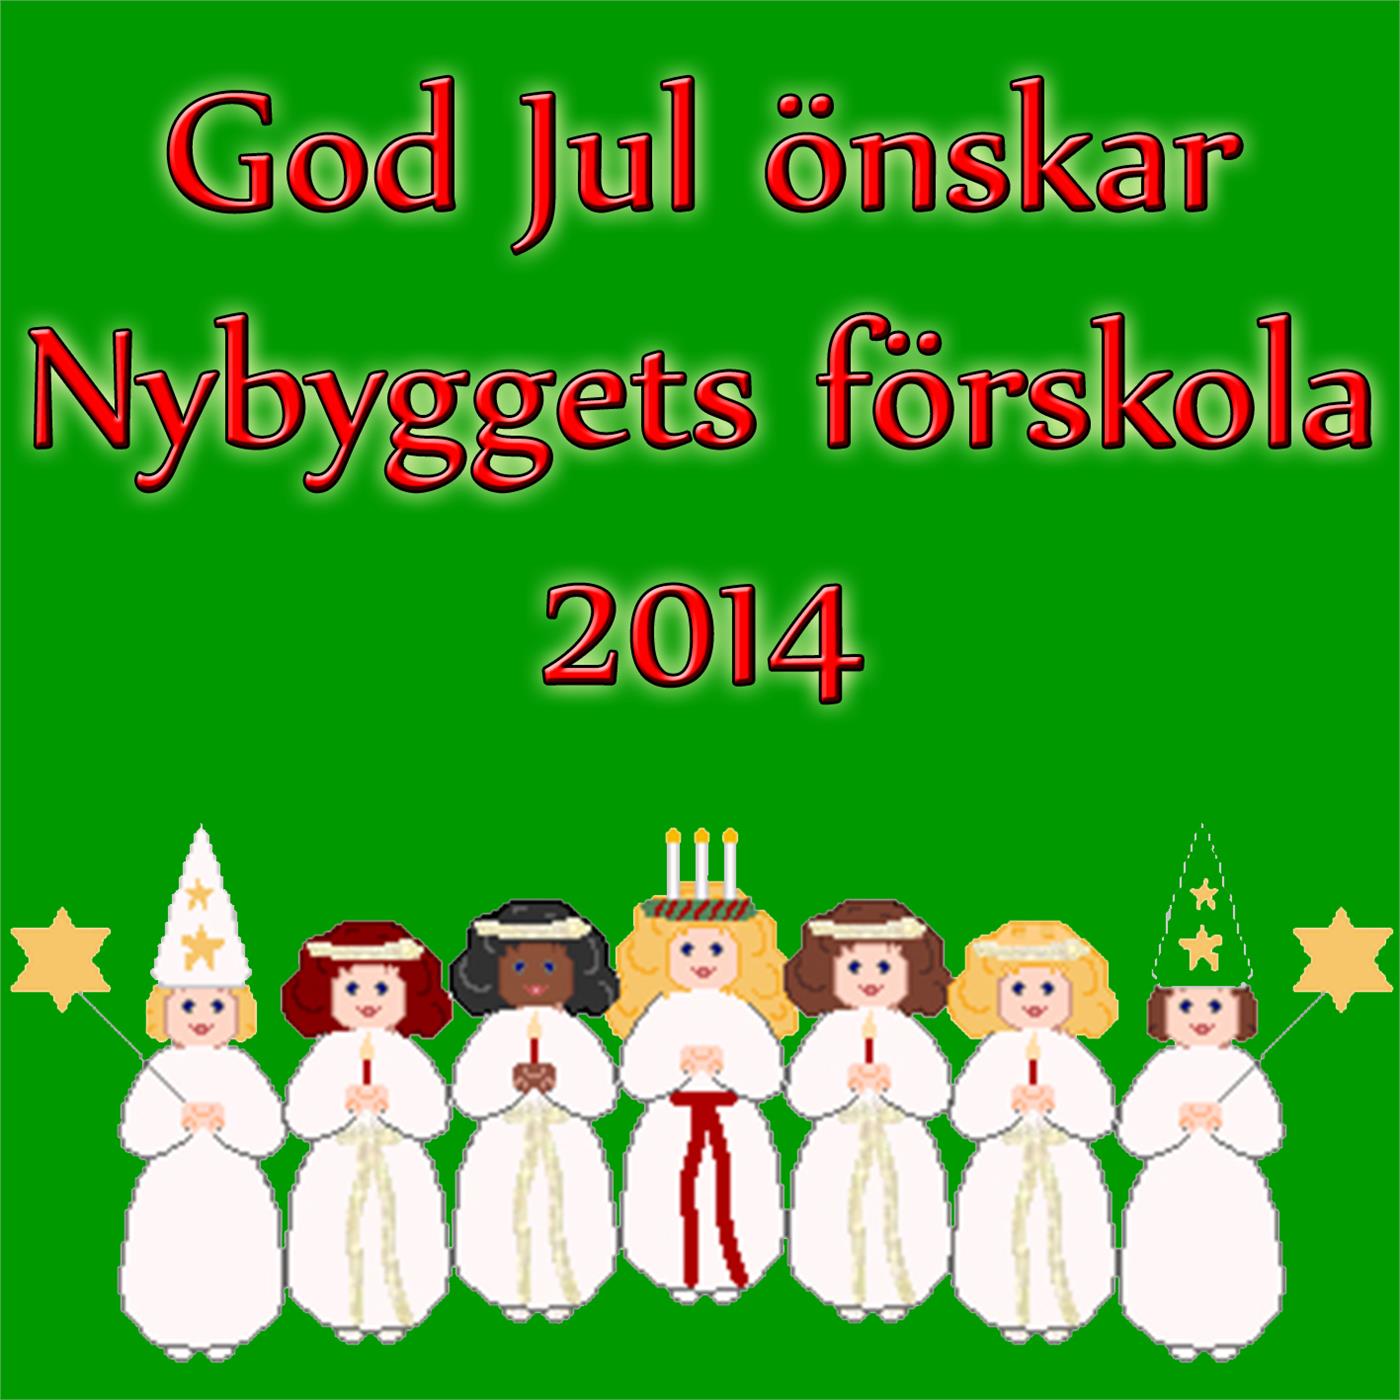 Nybyggets förskola önskar God Jul 2014